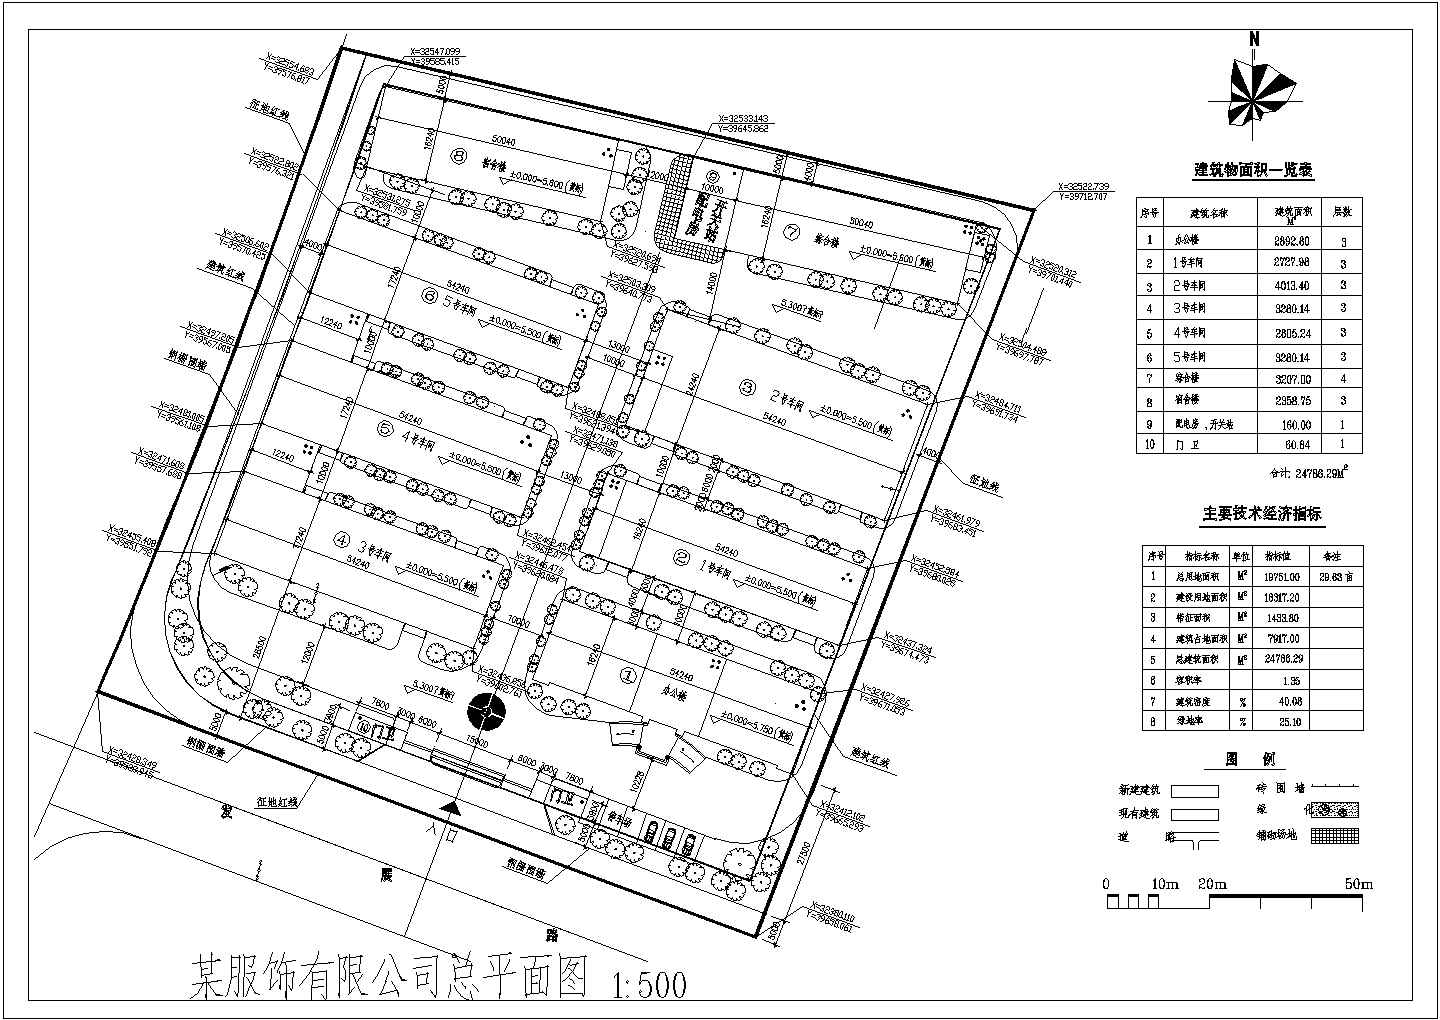 南方某服装厂厂区规划建筑平面设计图